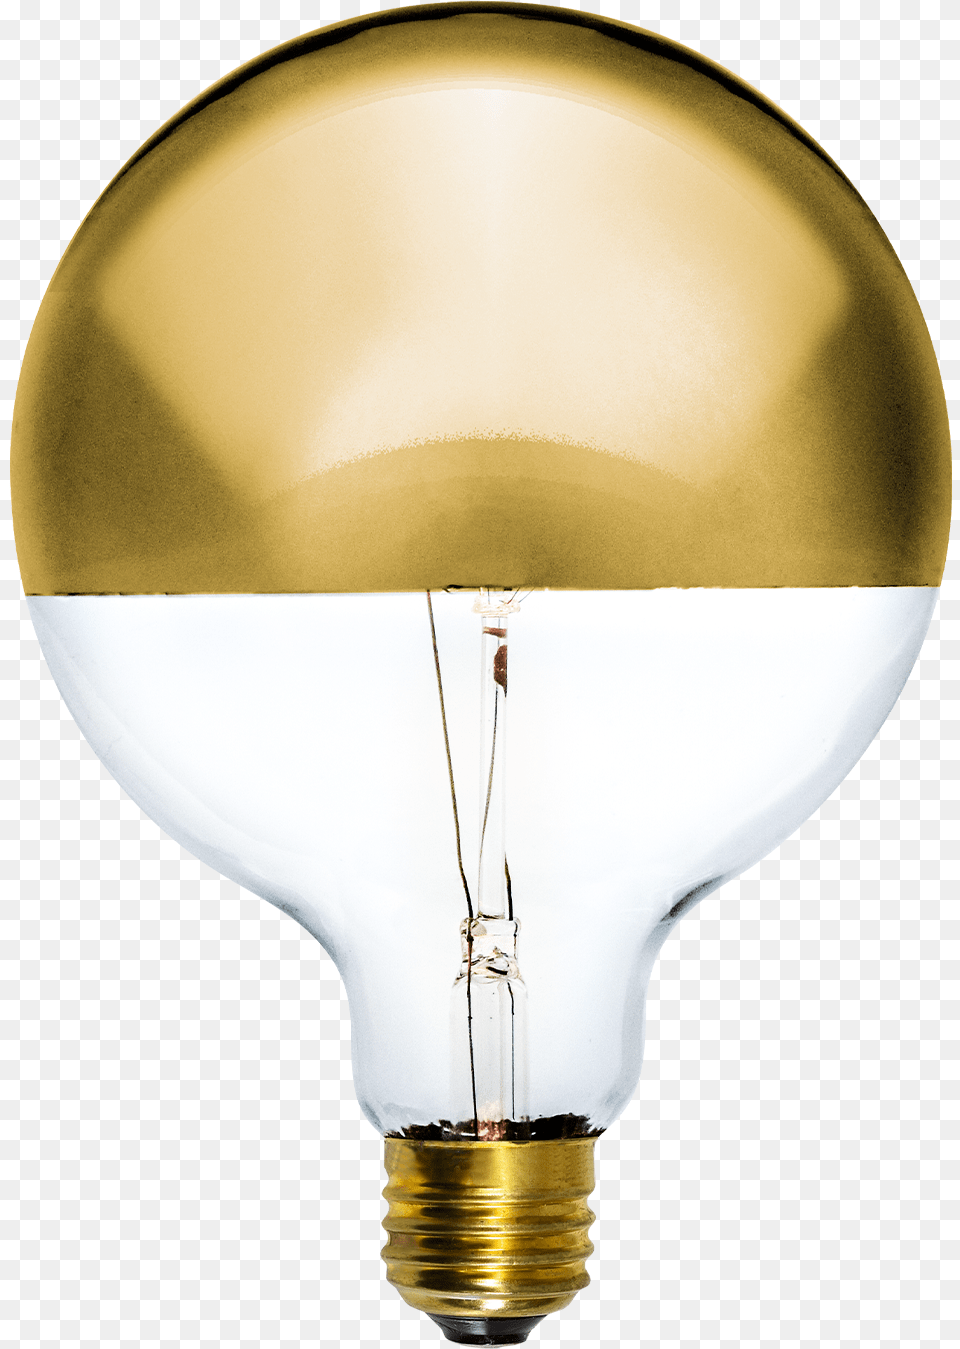 Led Gold Dipped Incandescent Light Bulb, Lamp, Lightbulb Png